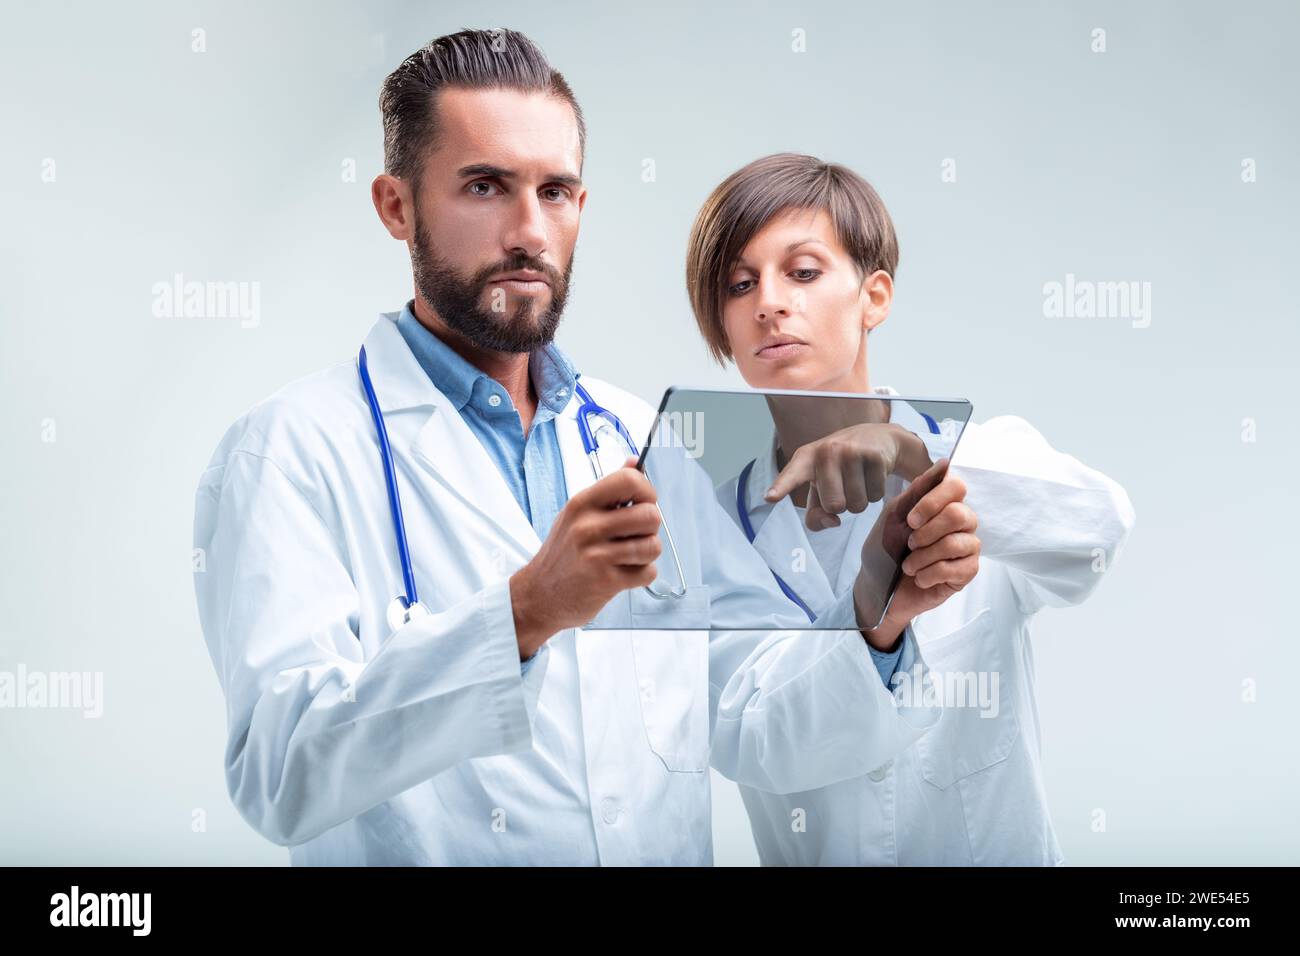 High-Tech-Gesundheitsanalyse in Aktion, wobei sich ein Mann und eine Frau intensiv auf die digitale Diagnostik konzentrieren Stockfoto